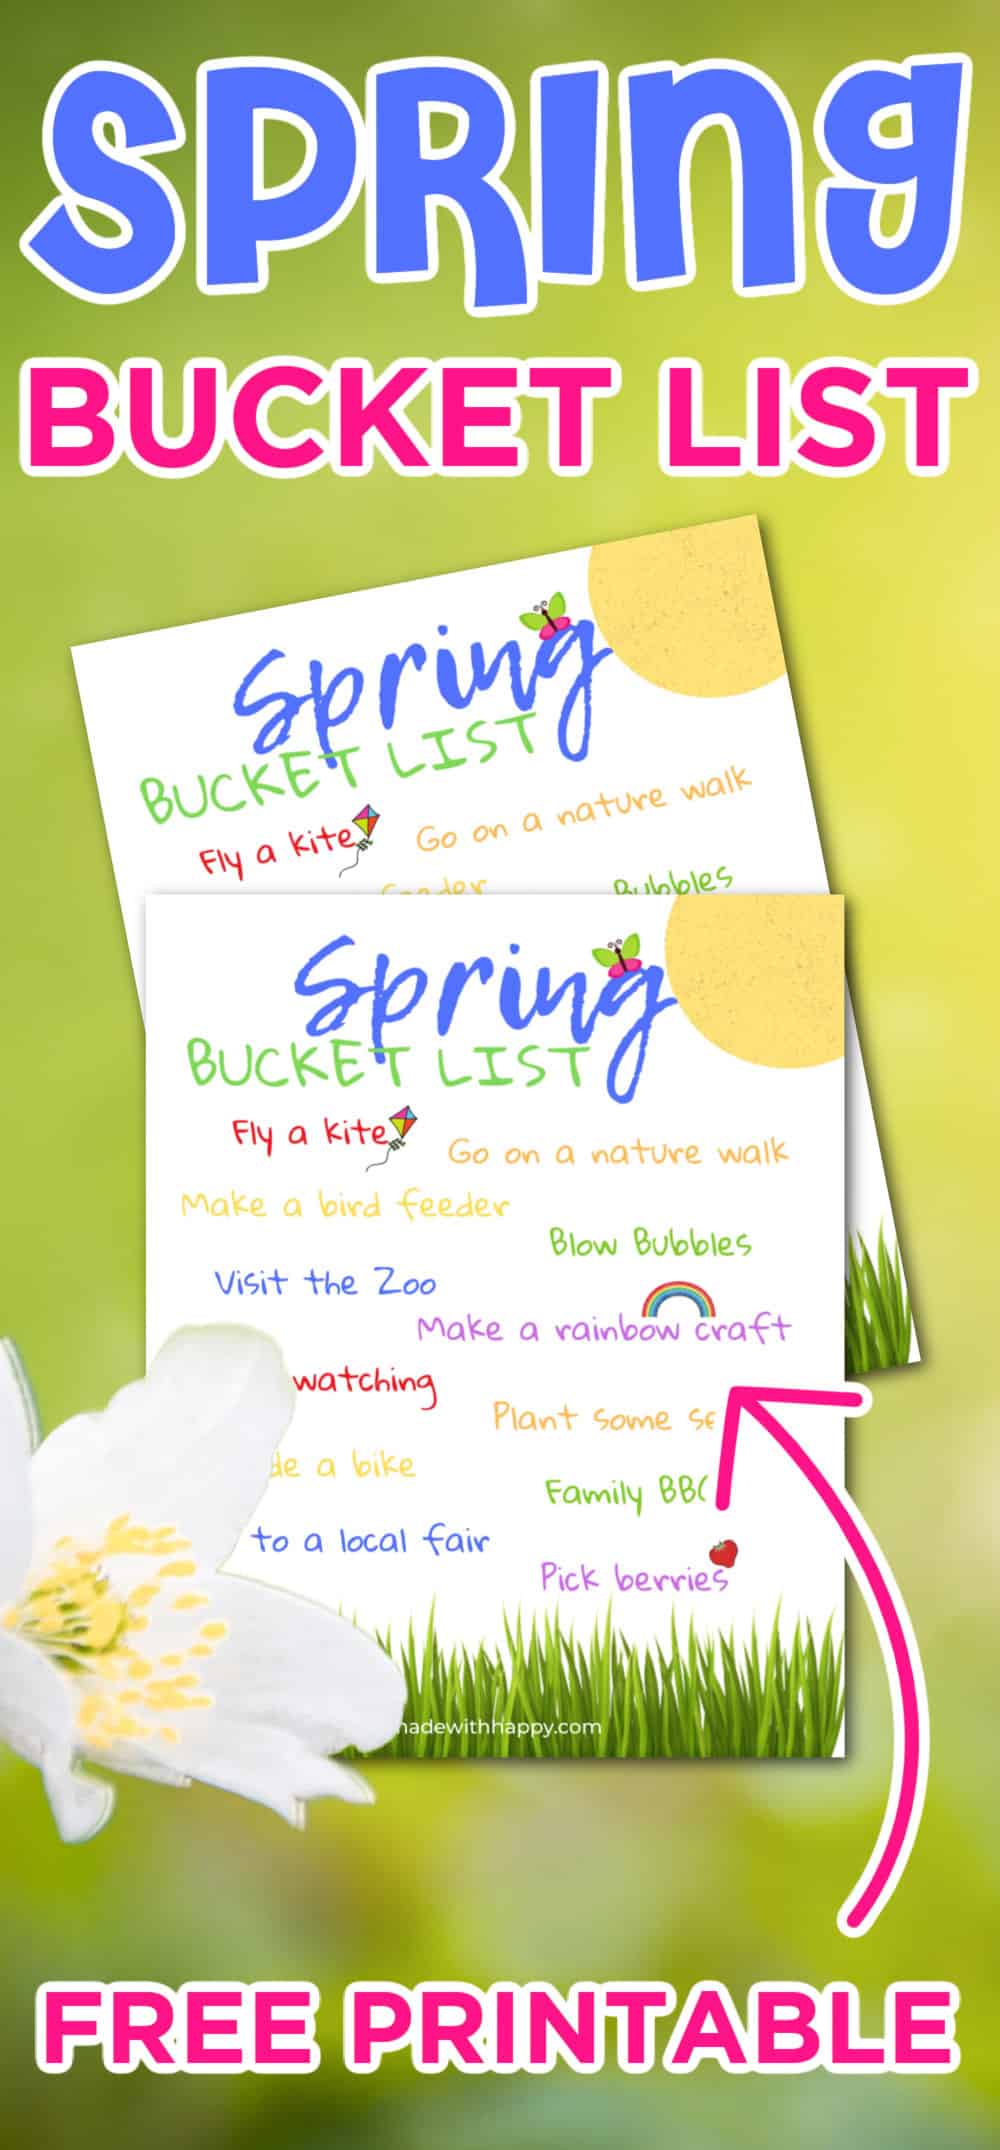 bucket list for spring break